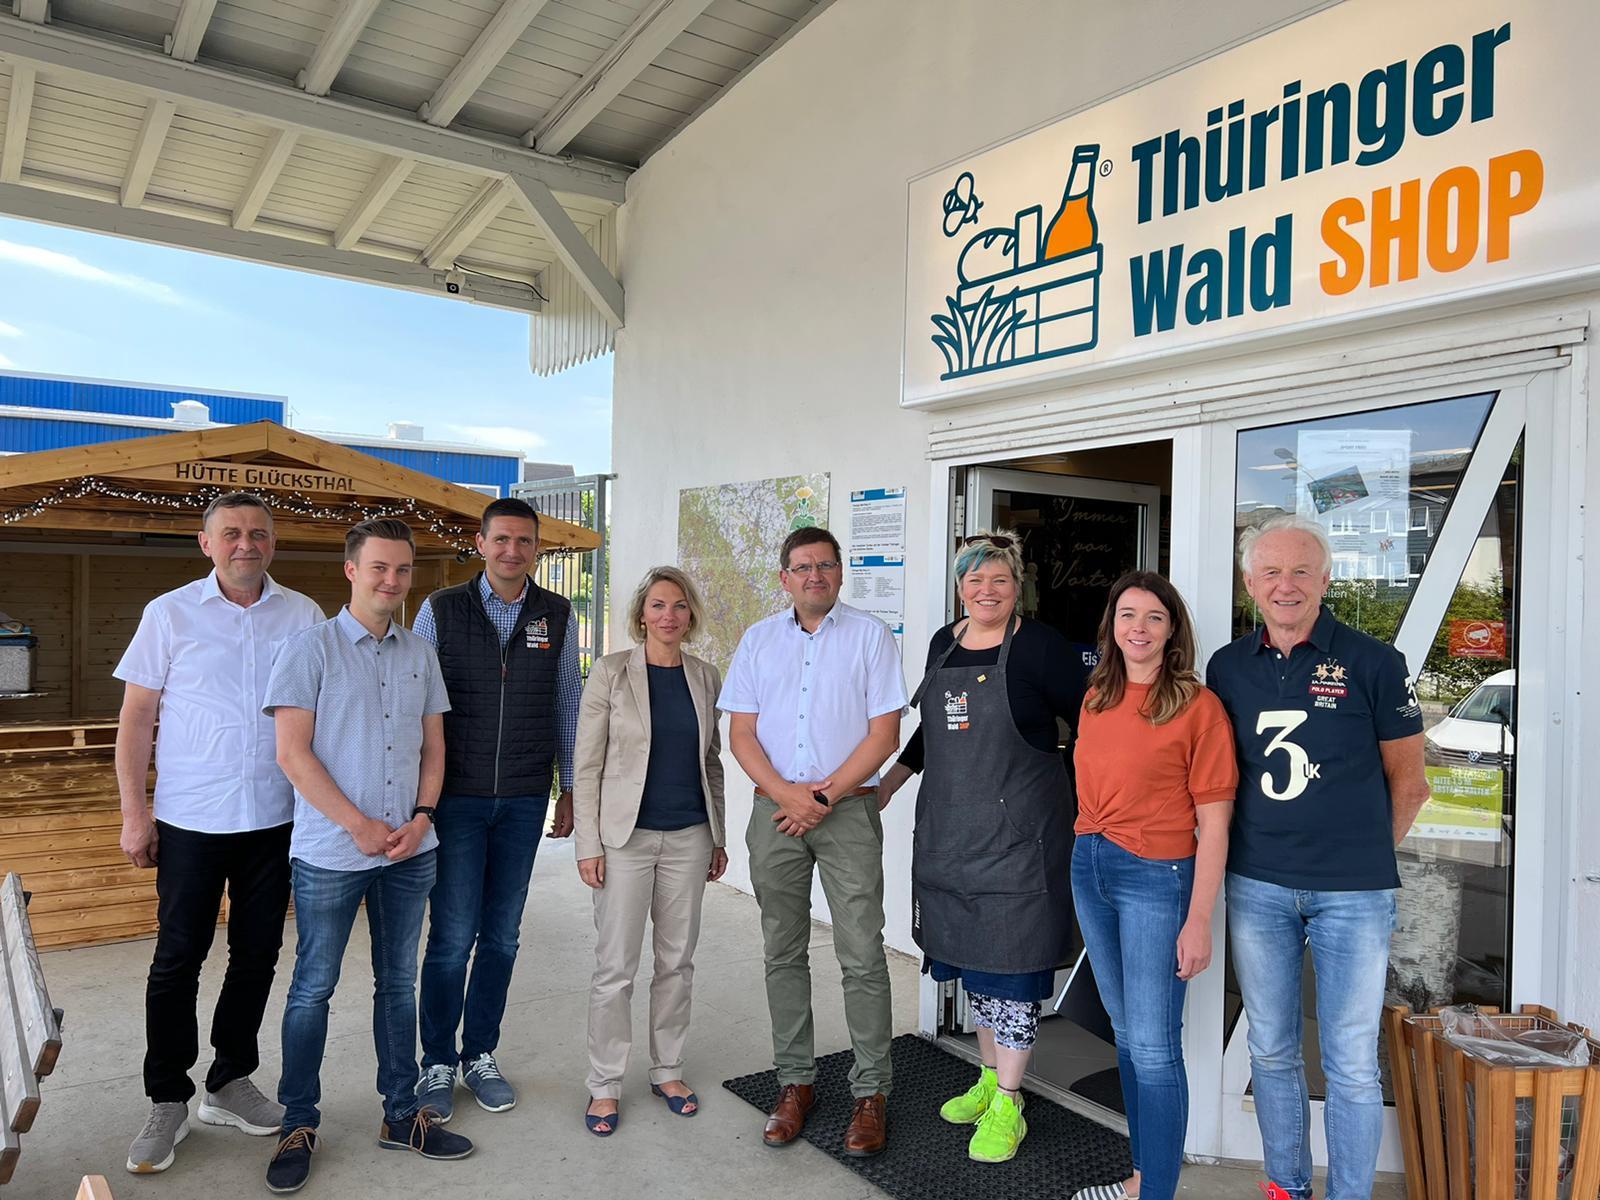 Ministerin Susanna Karawanskij - vierte von links - mit Bürgermeister Uwe Scheler vor dem Thüringer Wald Shop